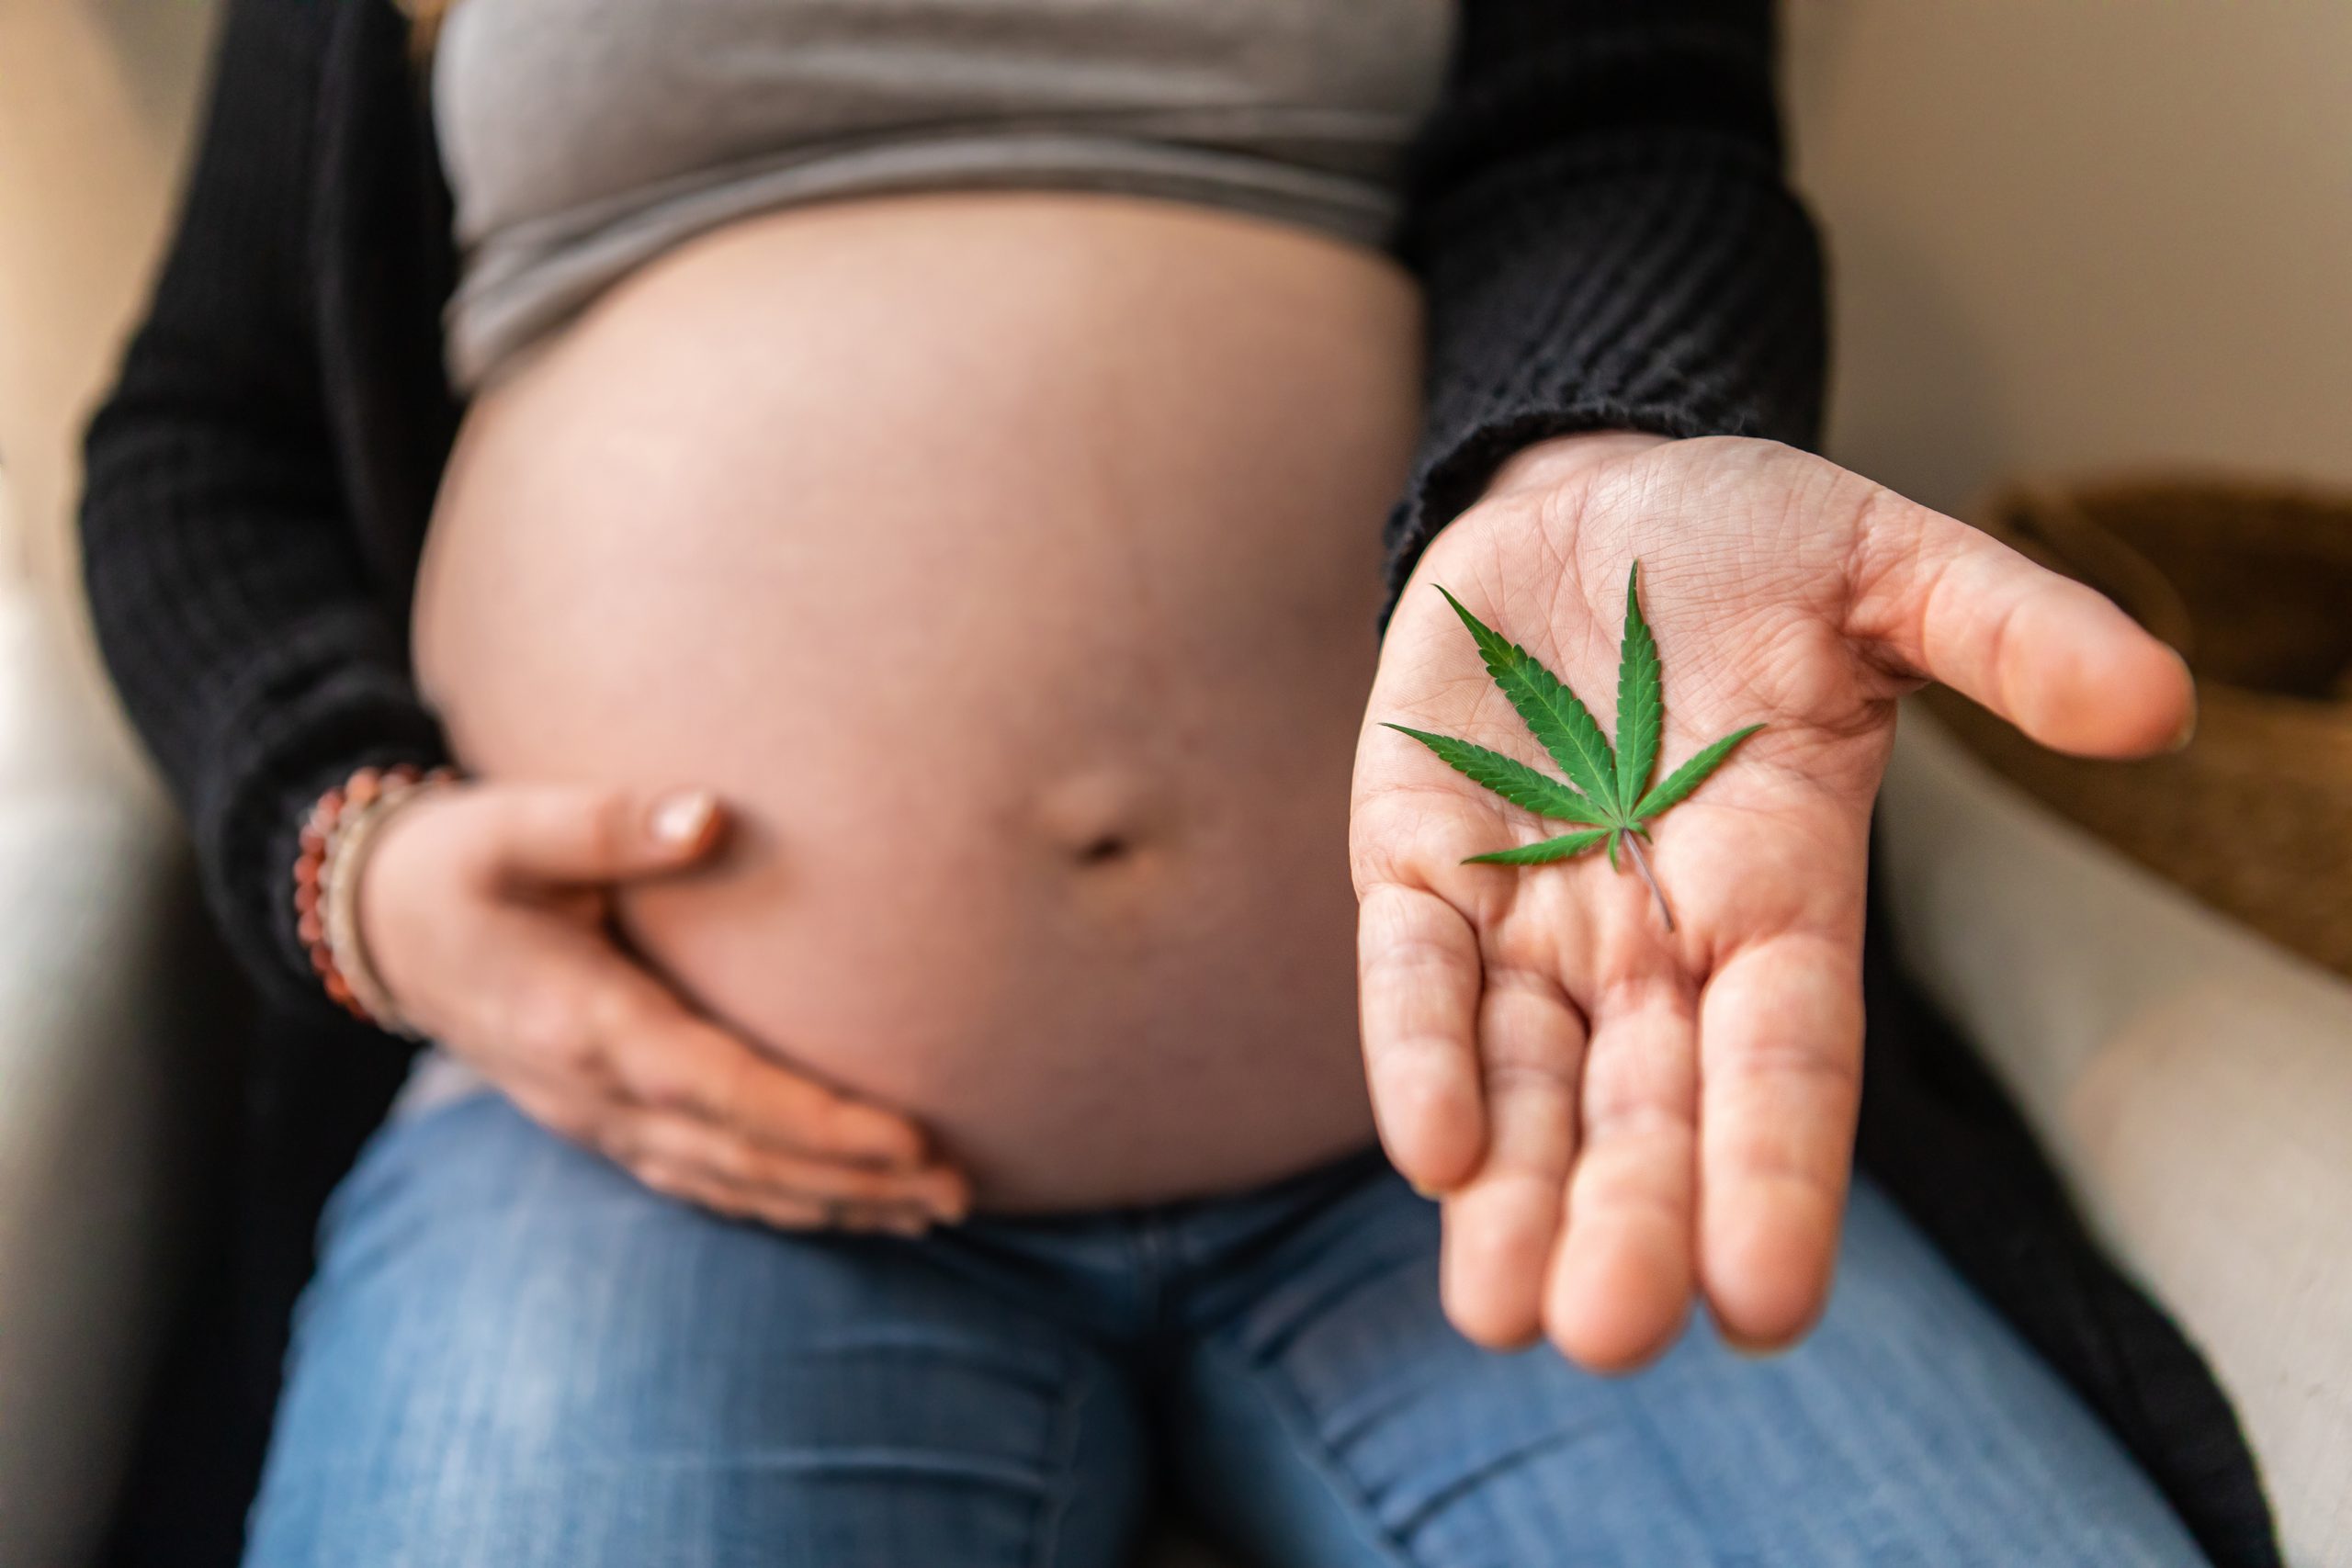 Cannabiskonsum in der Schwangerschaft